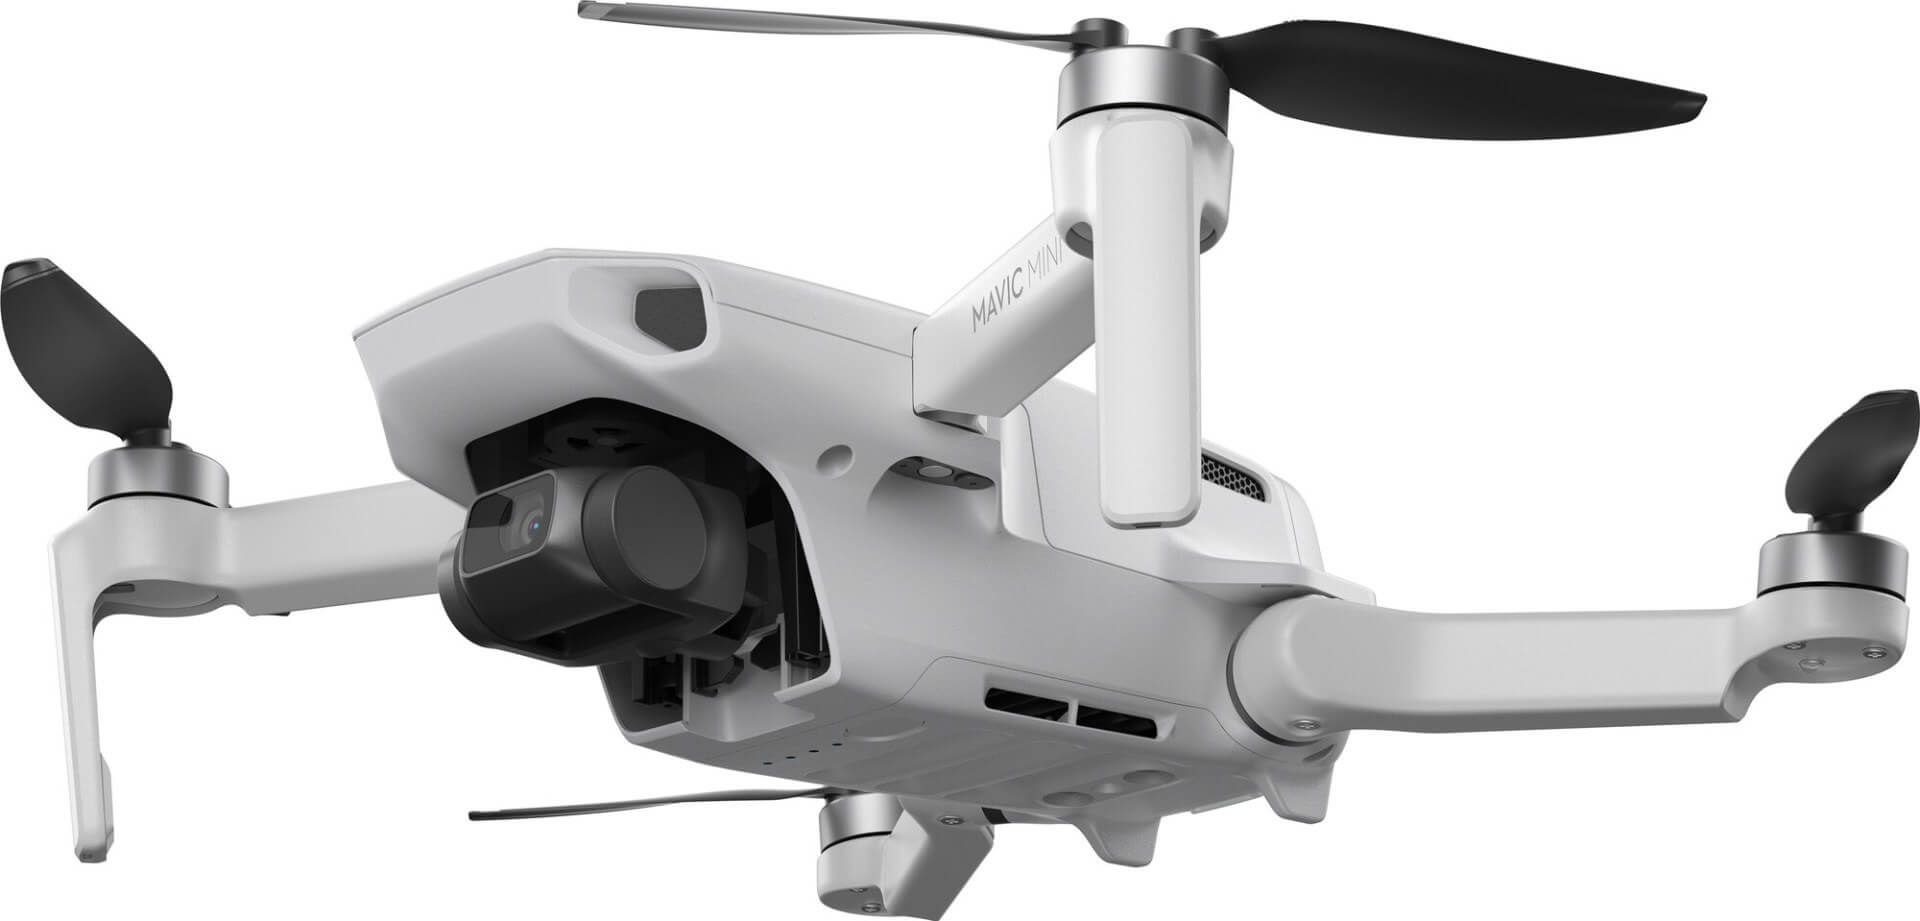 DJI Mavic Mini cena kiedy premiera specyfikacja techniczna drony plotki przecieki wycieki opinie